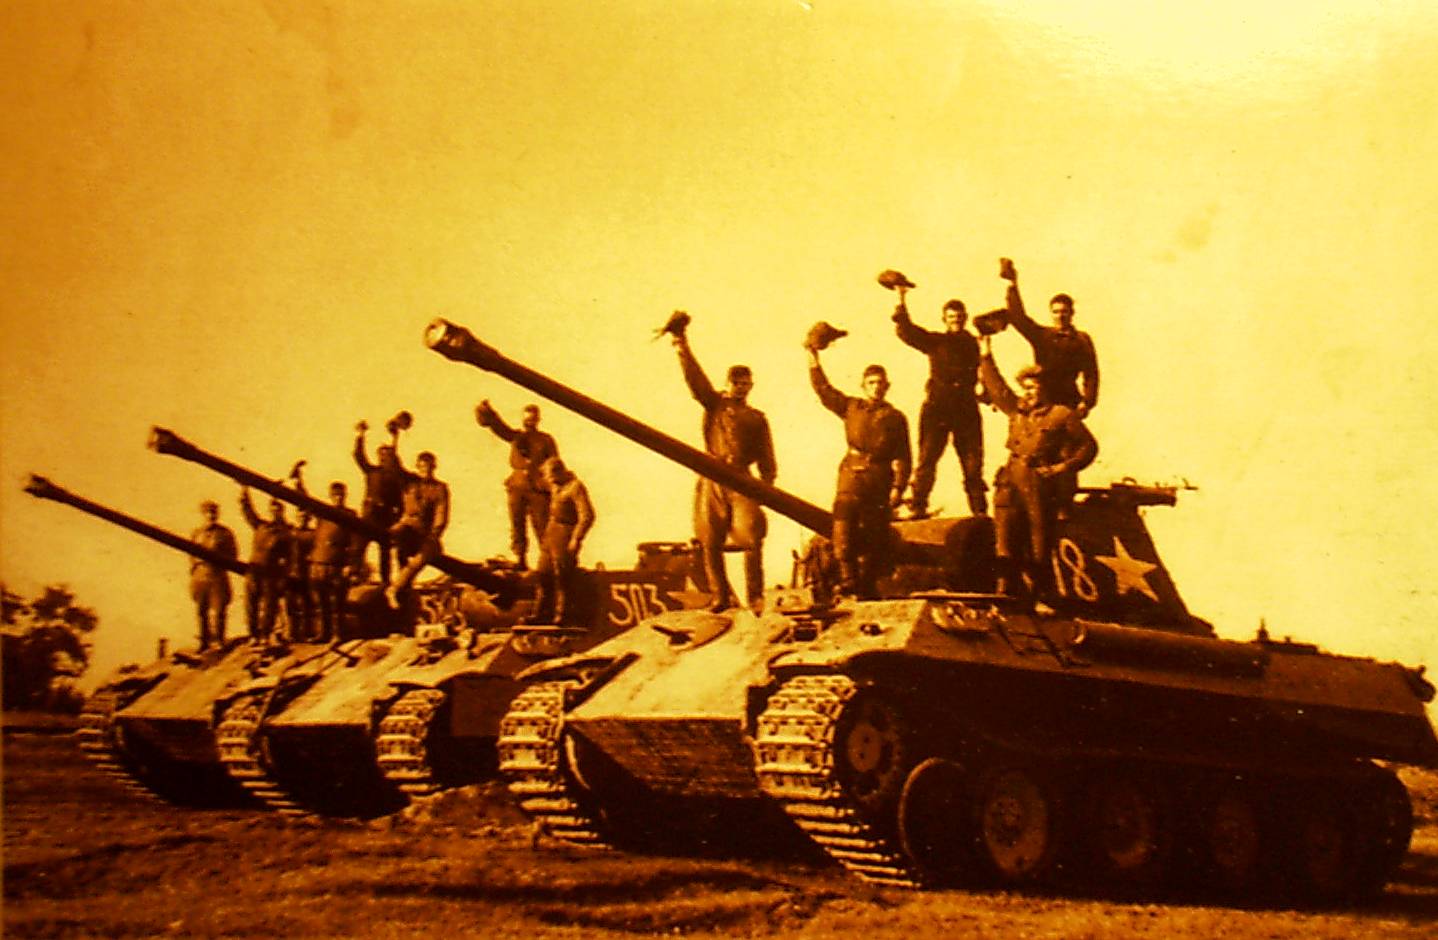 фото танков победы